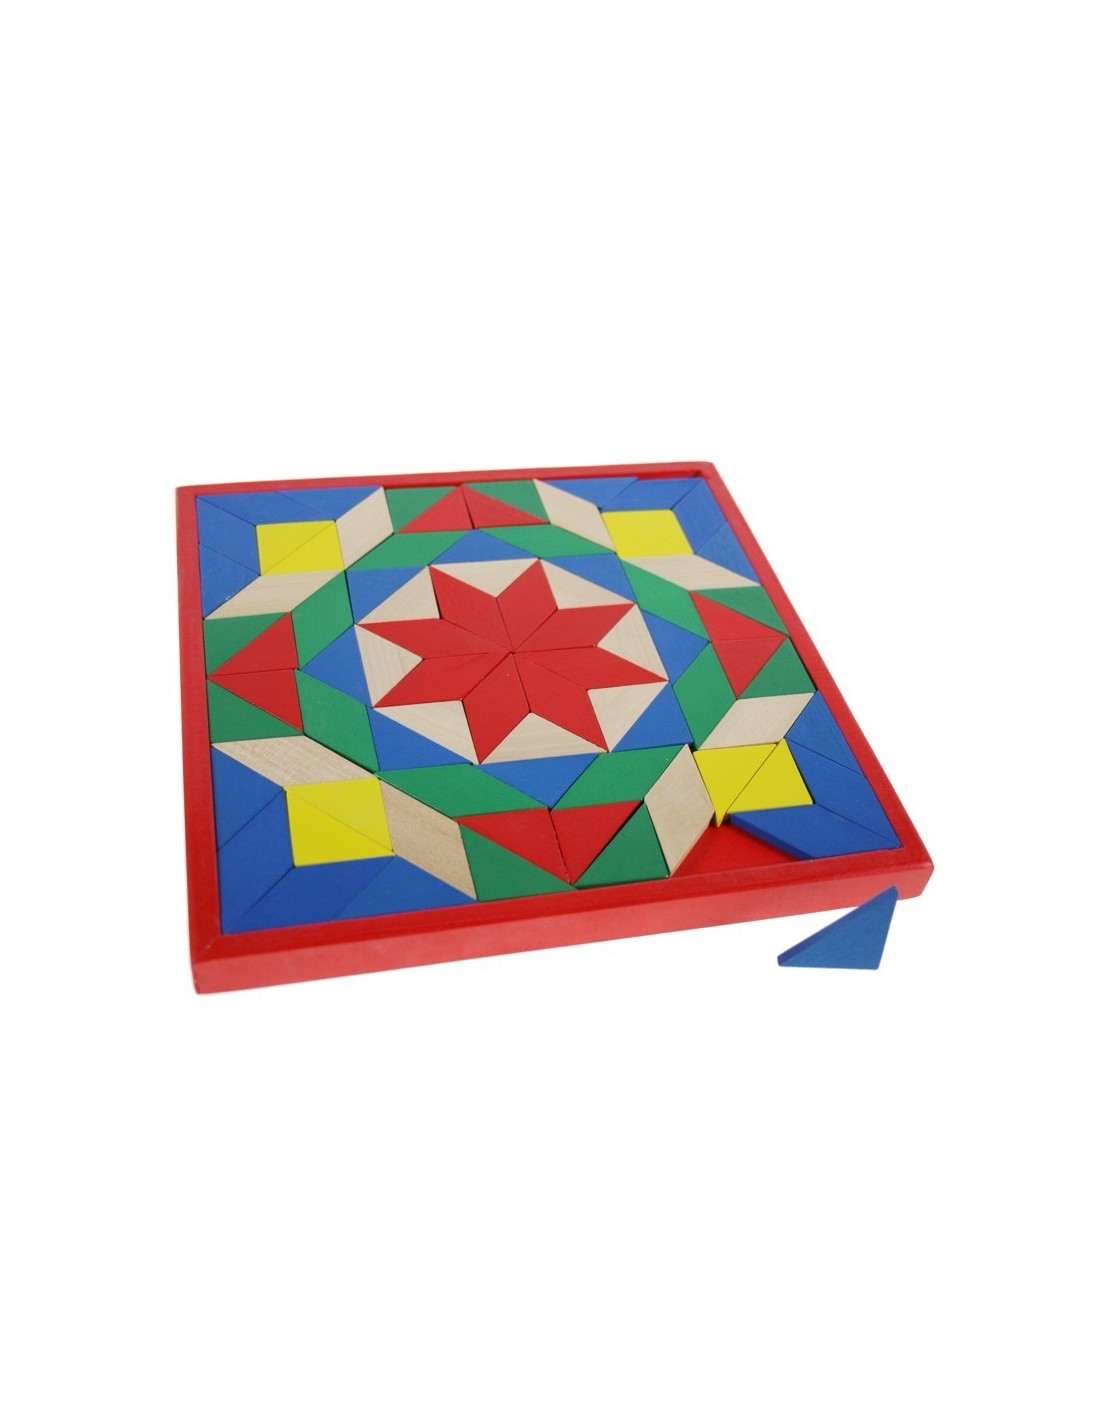 Puzzle mosaïque en bois avec jeu d'enfant aux couleurs vives